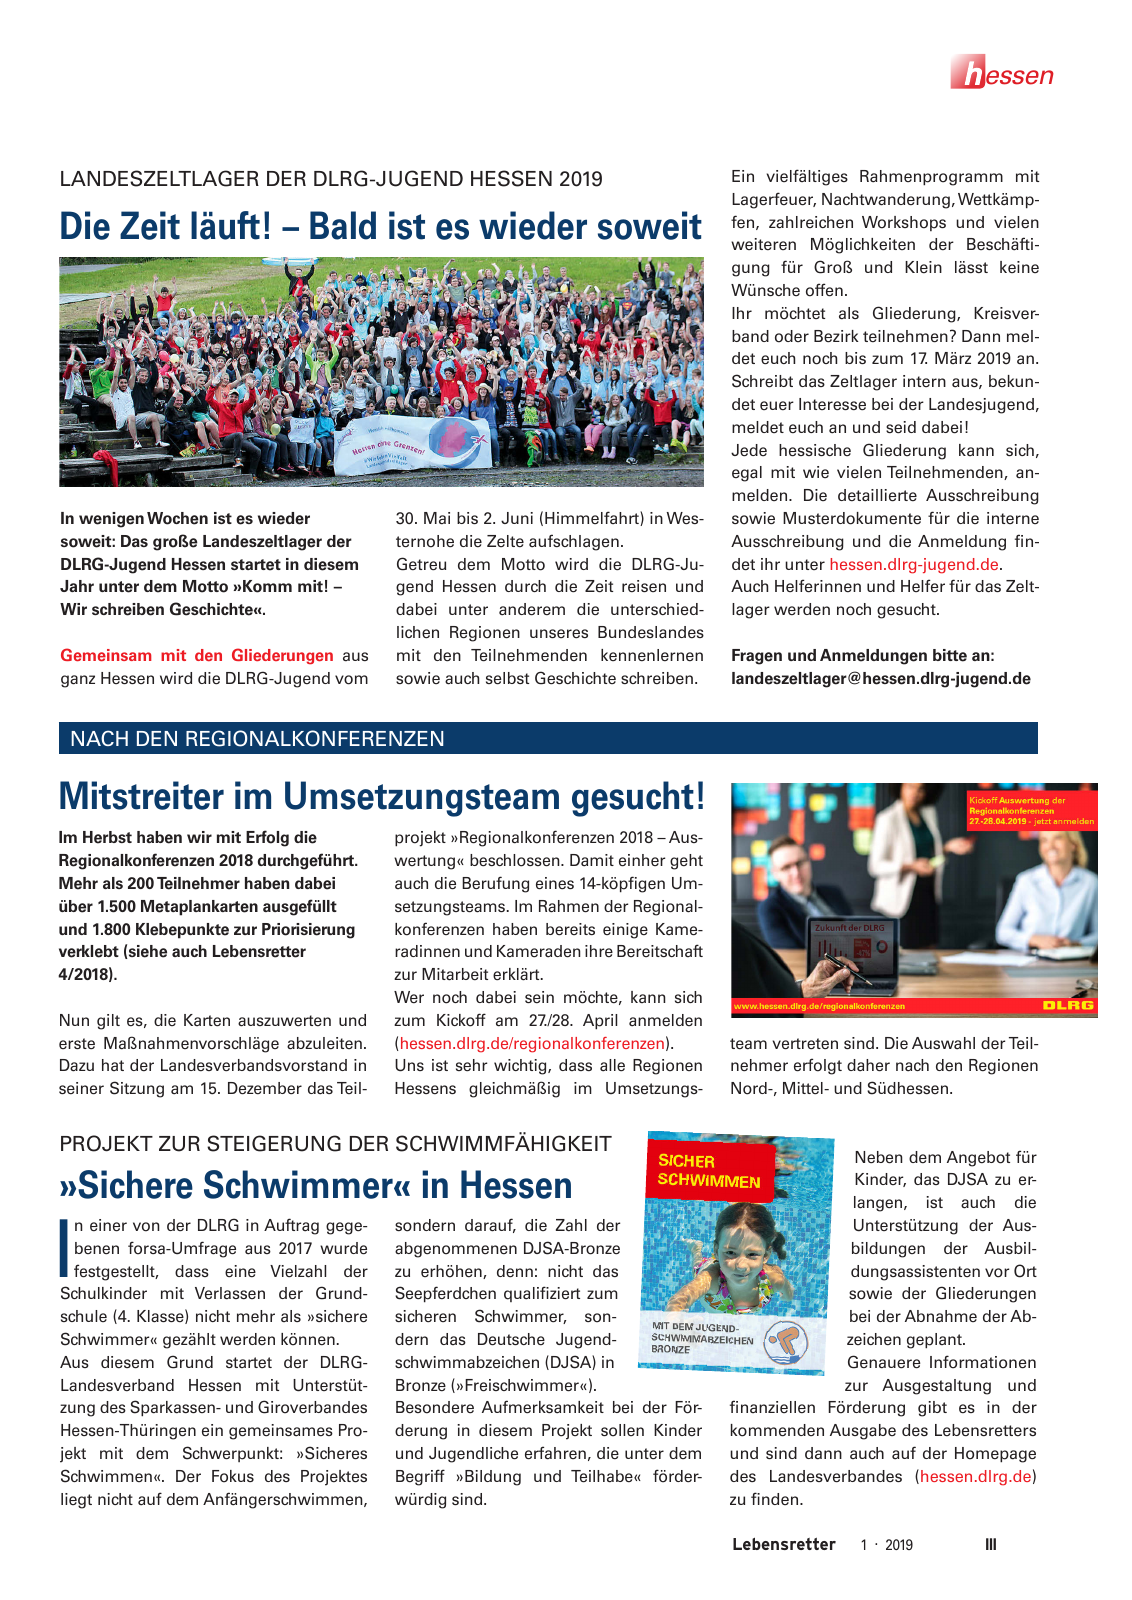 Vorschau Lebensretter 1/2019 –  Regionalausgabe Hessen Seite 5